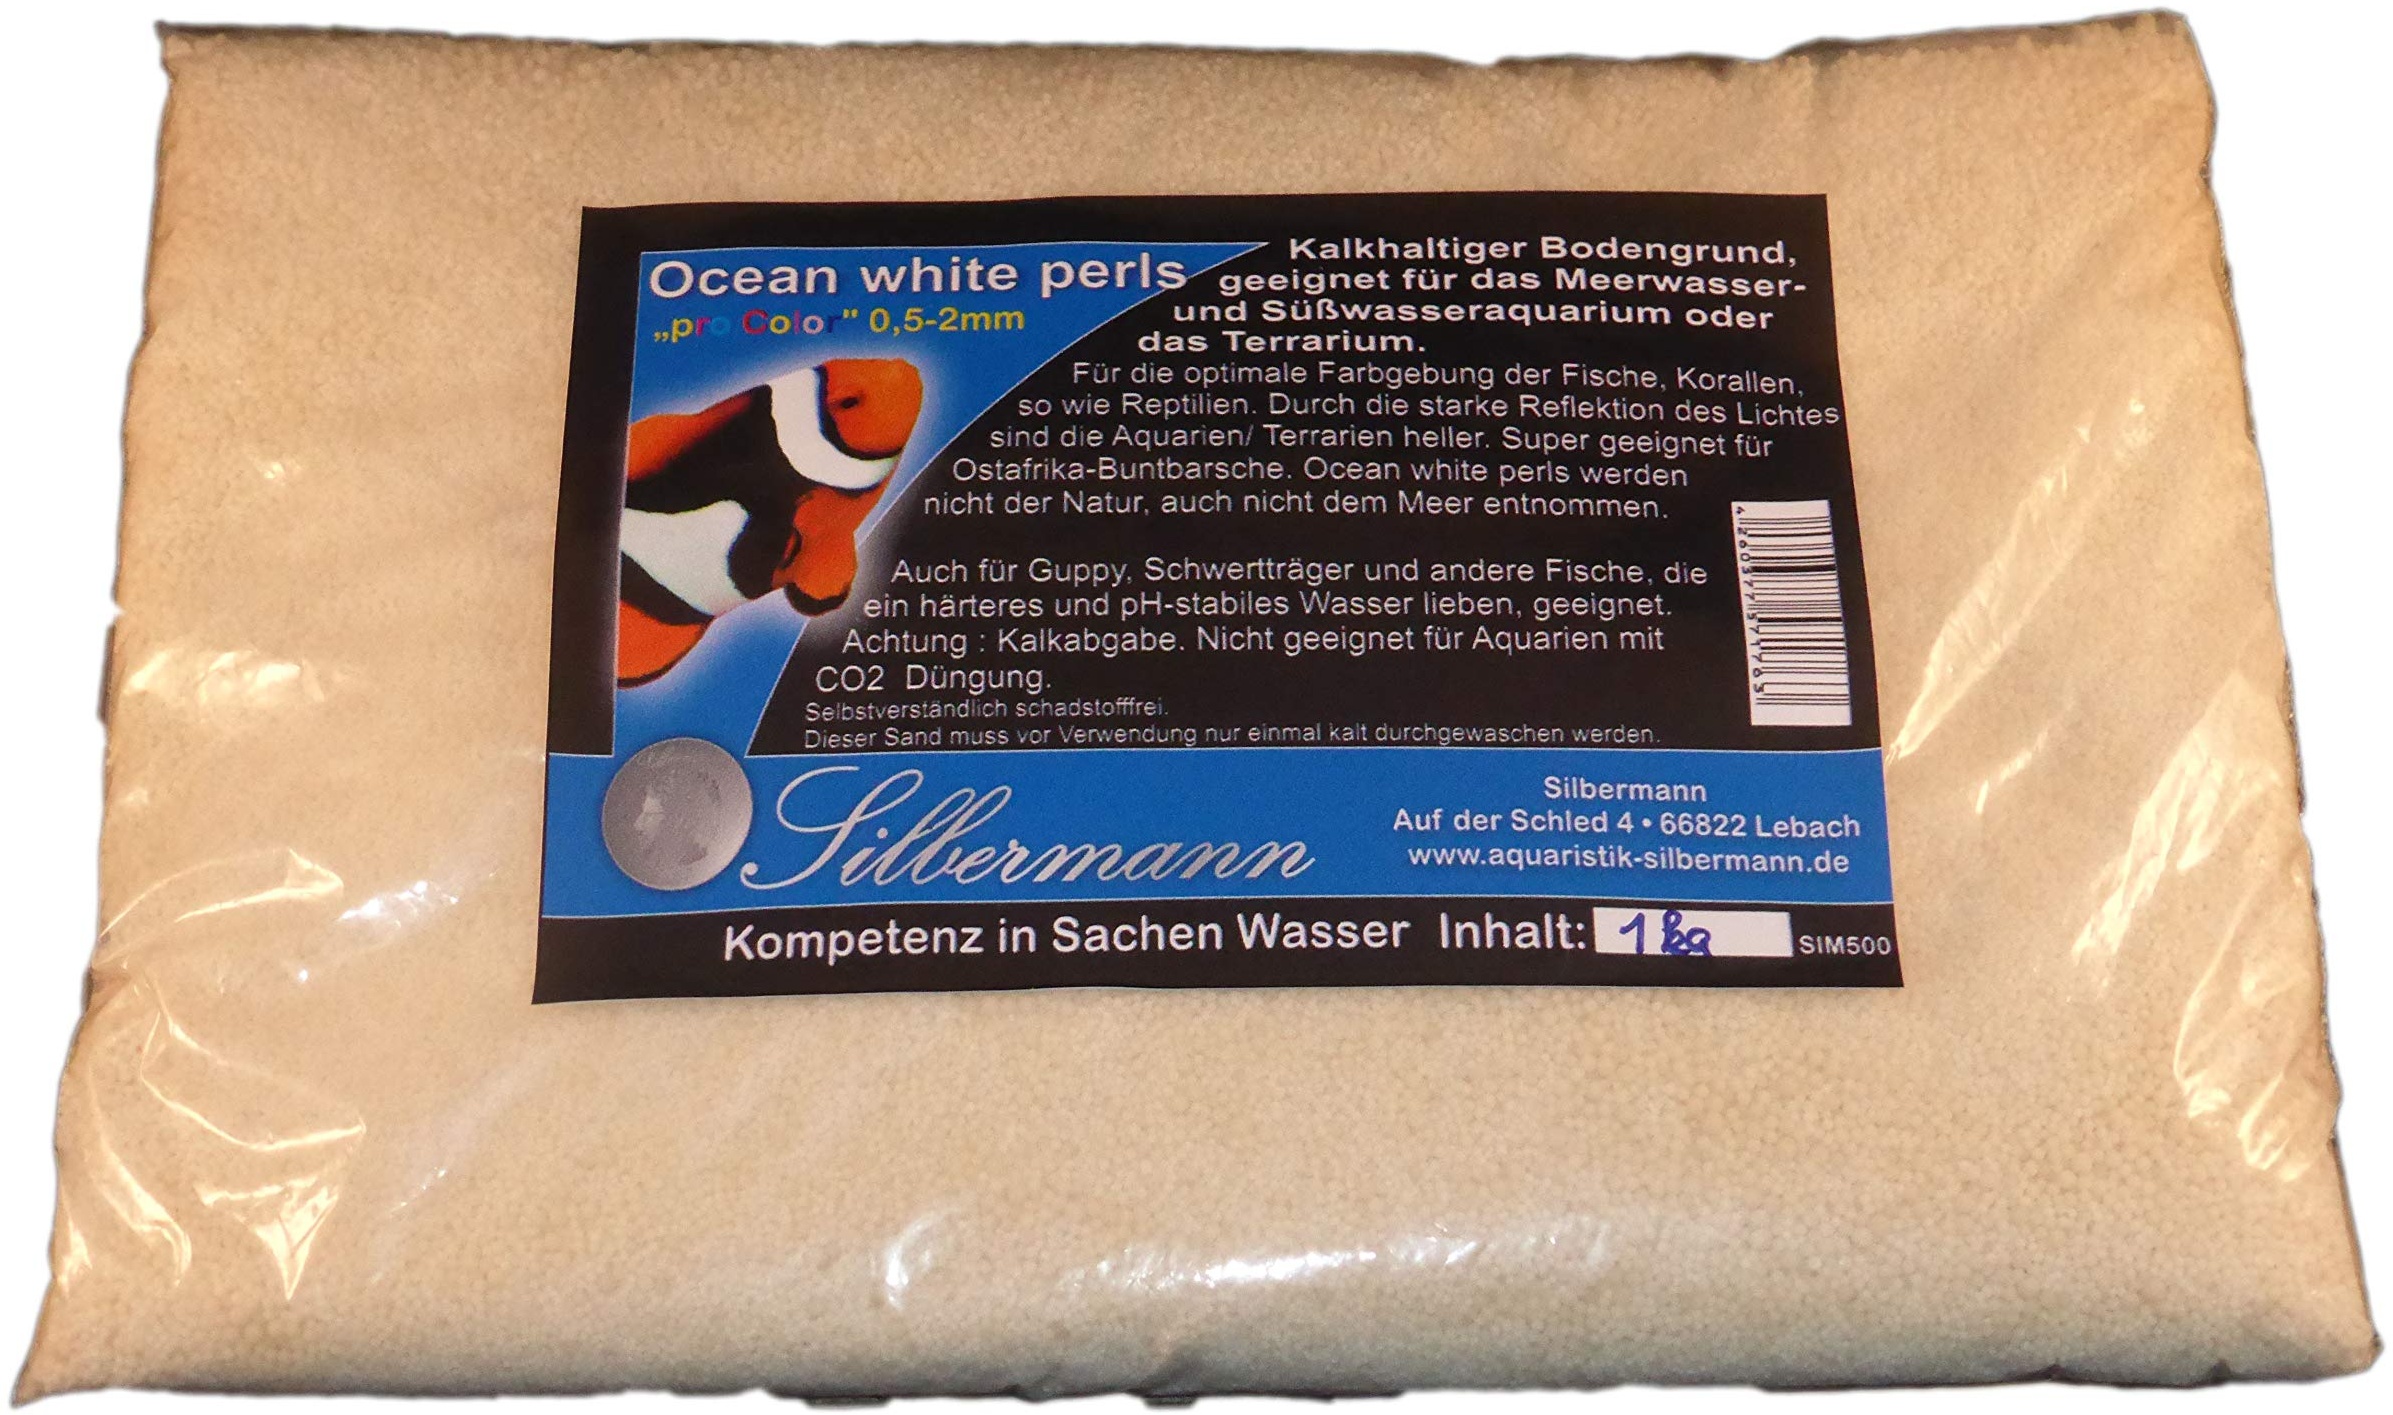 Silbermann Ocean White Perls, weißer kalkhaltiger Bodengrund für Meerwasser und Süßwasser Aquarium und Terrarium, Aquarienkies, Aquariensand 0,5-2 mm Körnung, 5 kg